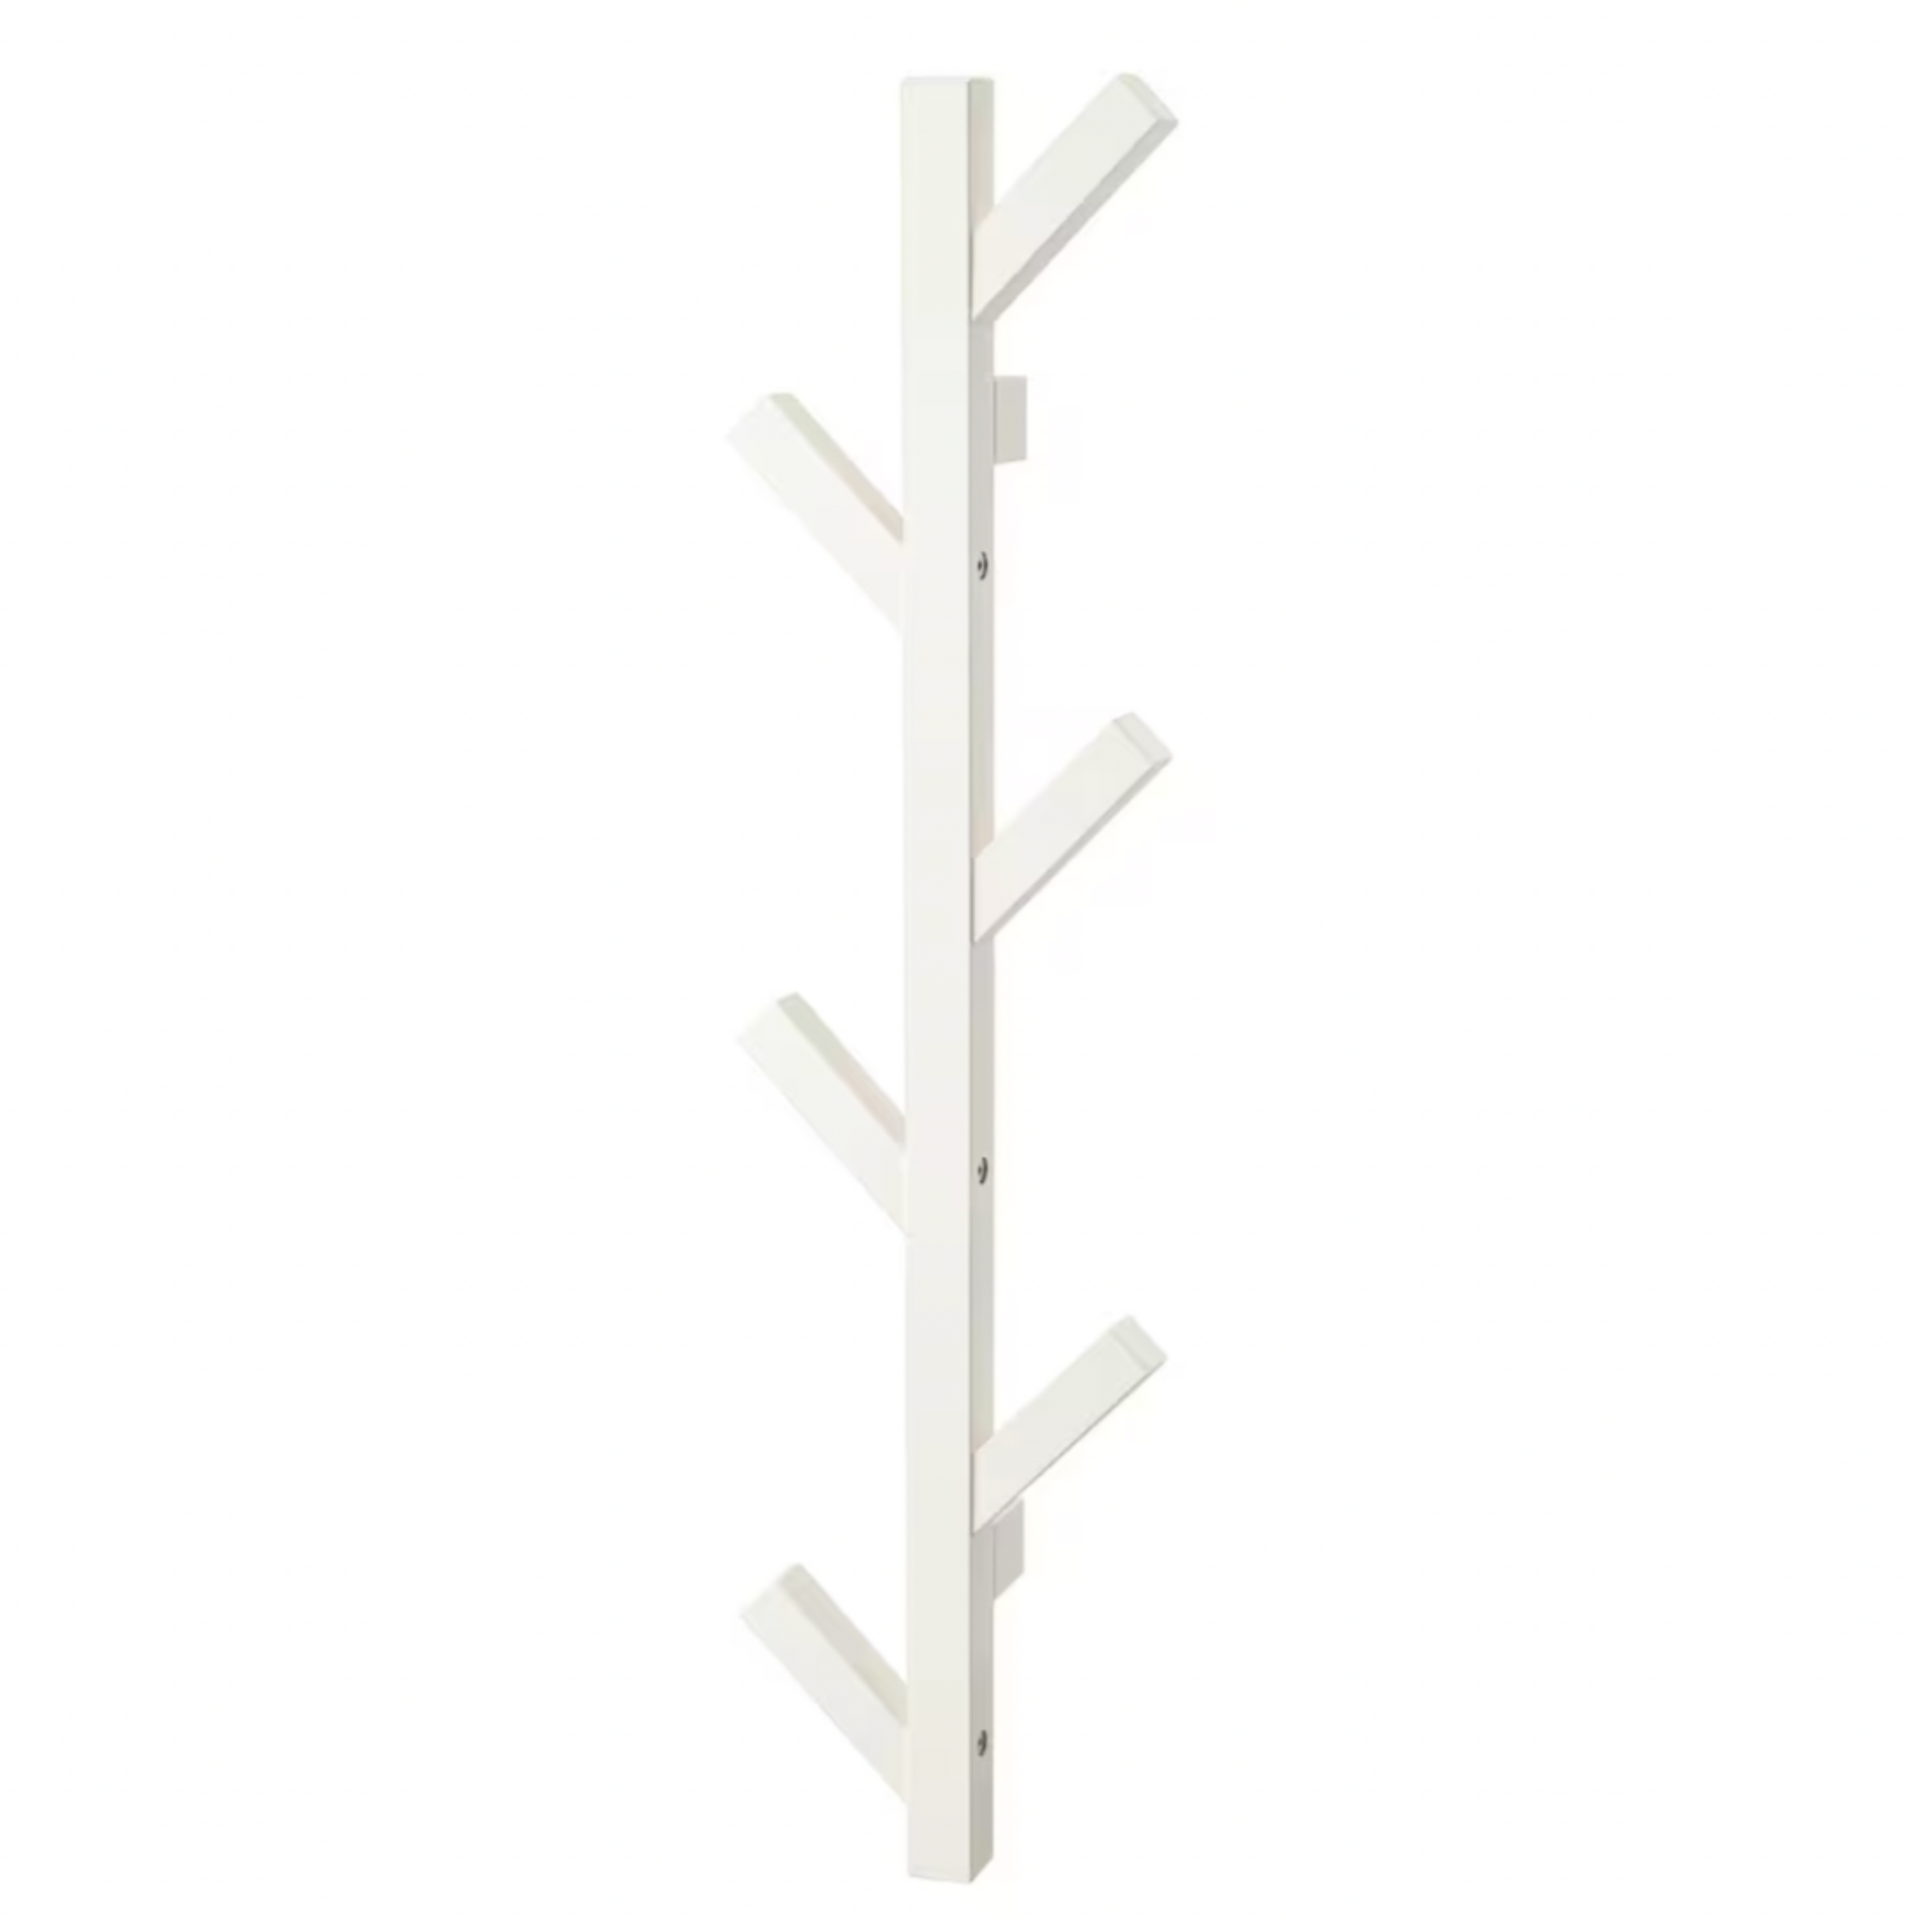 IKEA Tjusig Tree Coat Hanger (5978329669)